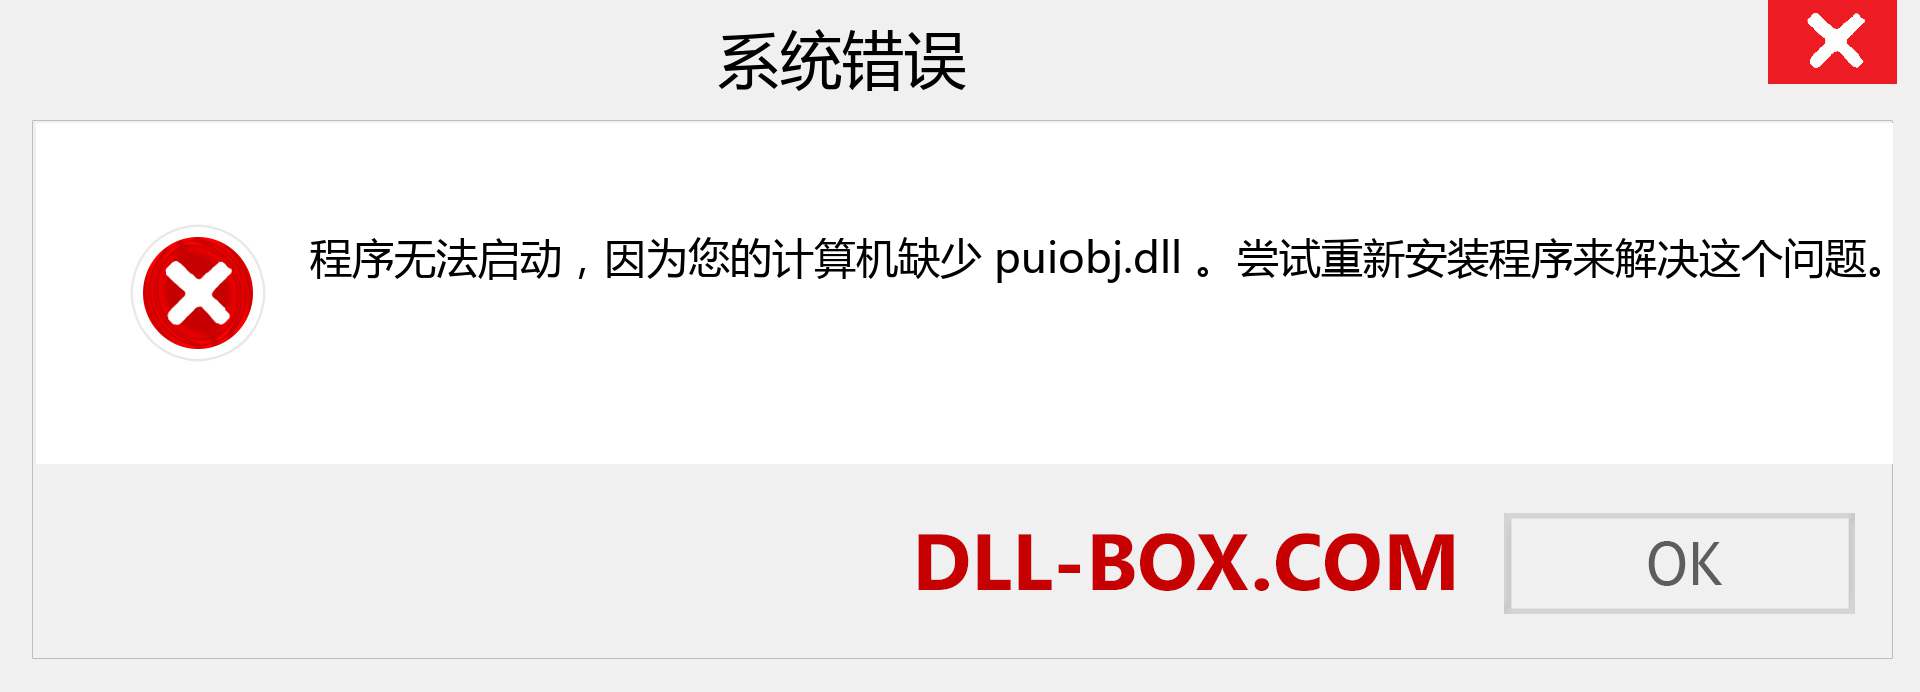 puiobj.dll 文件丢失？。 适用于 Windows 7、8、10 的下载 - 修复 Windows、照片、图像上的 puiobj dll 丢失错误